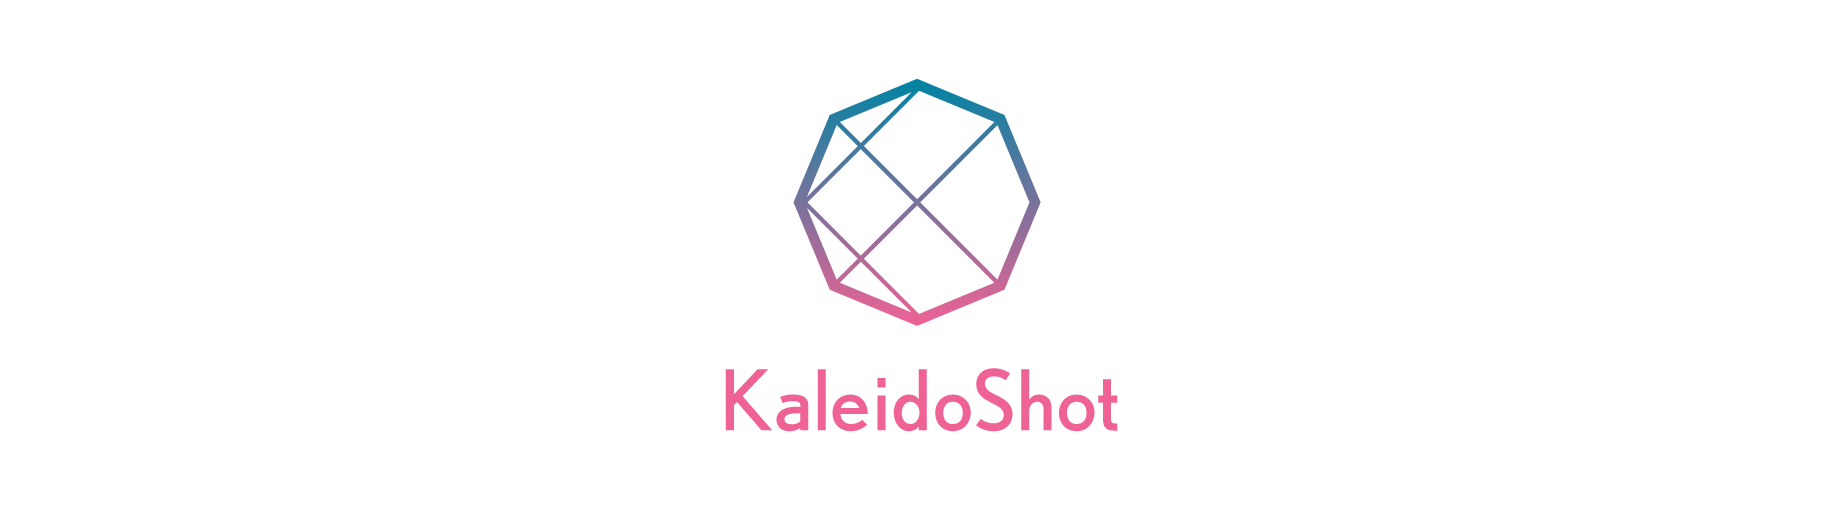 KaleidoShot